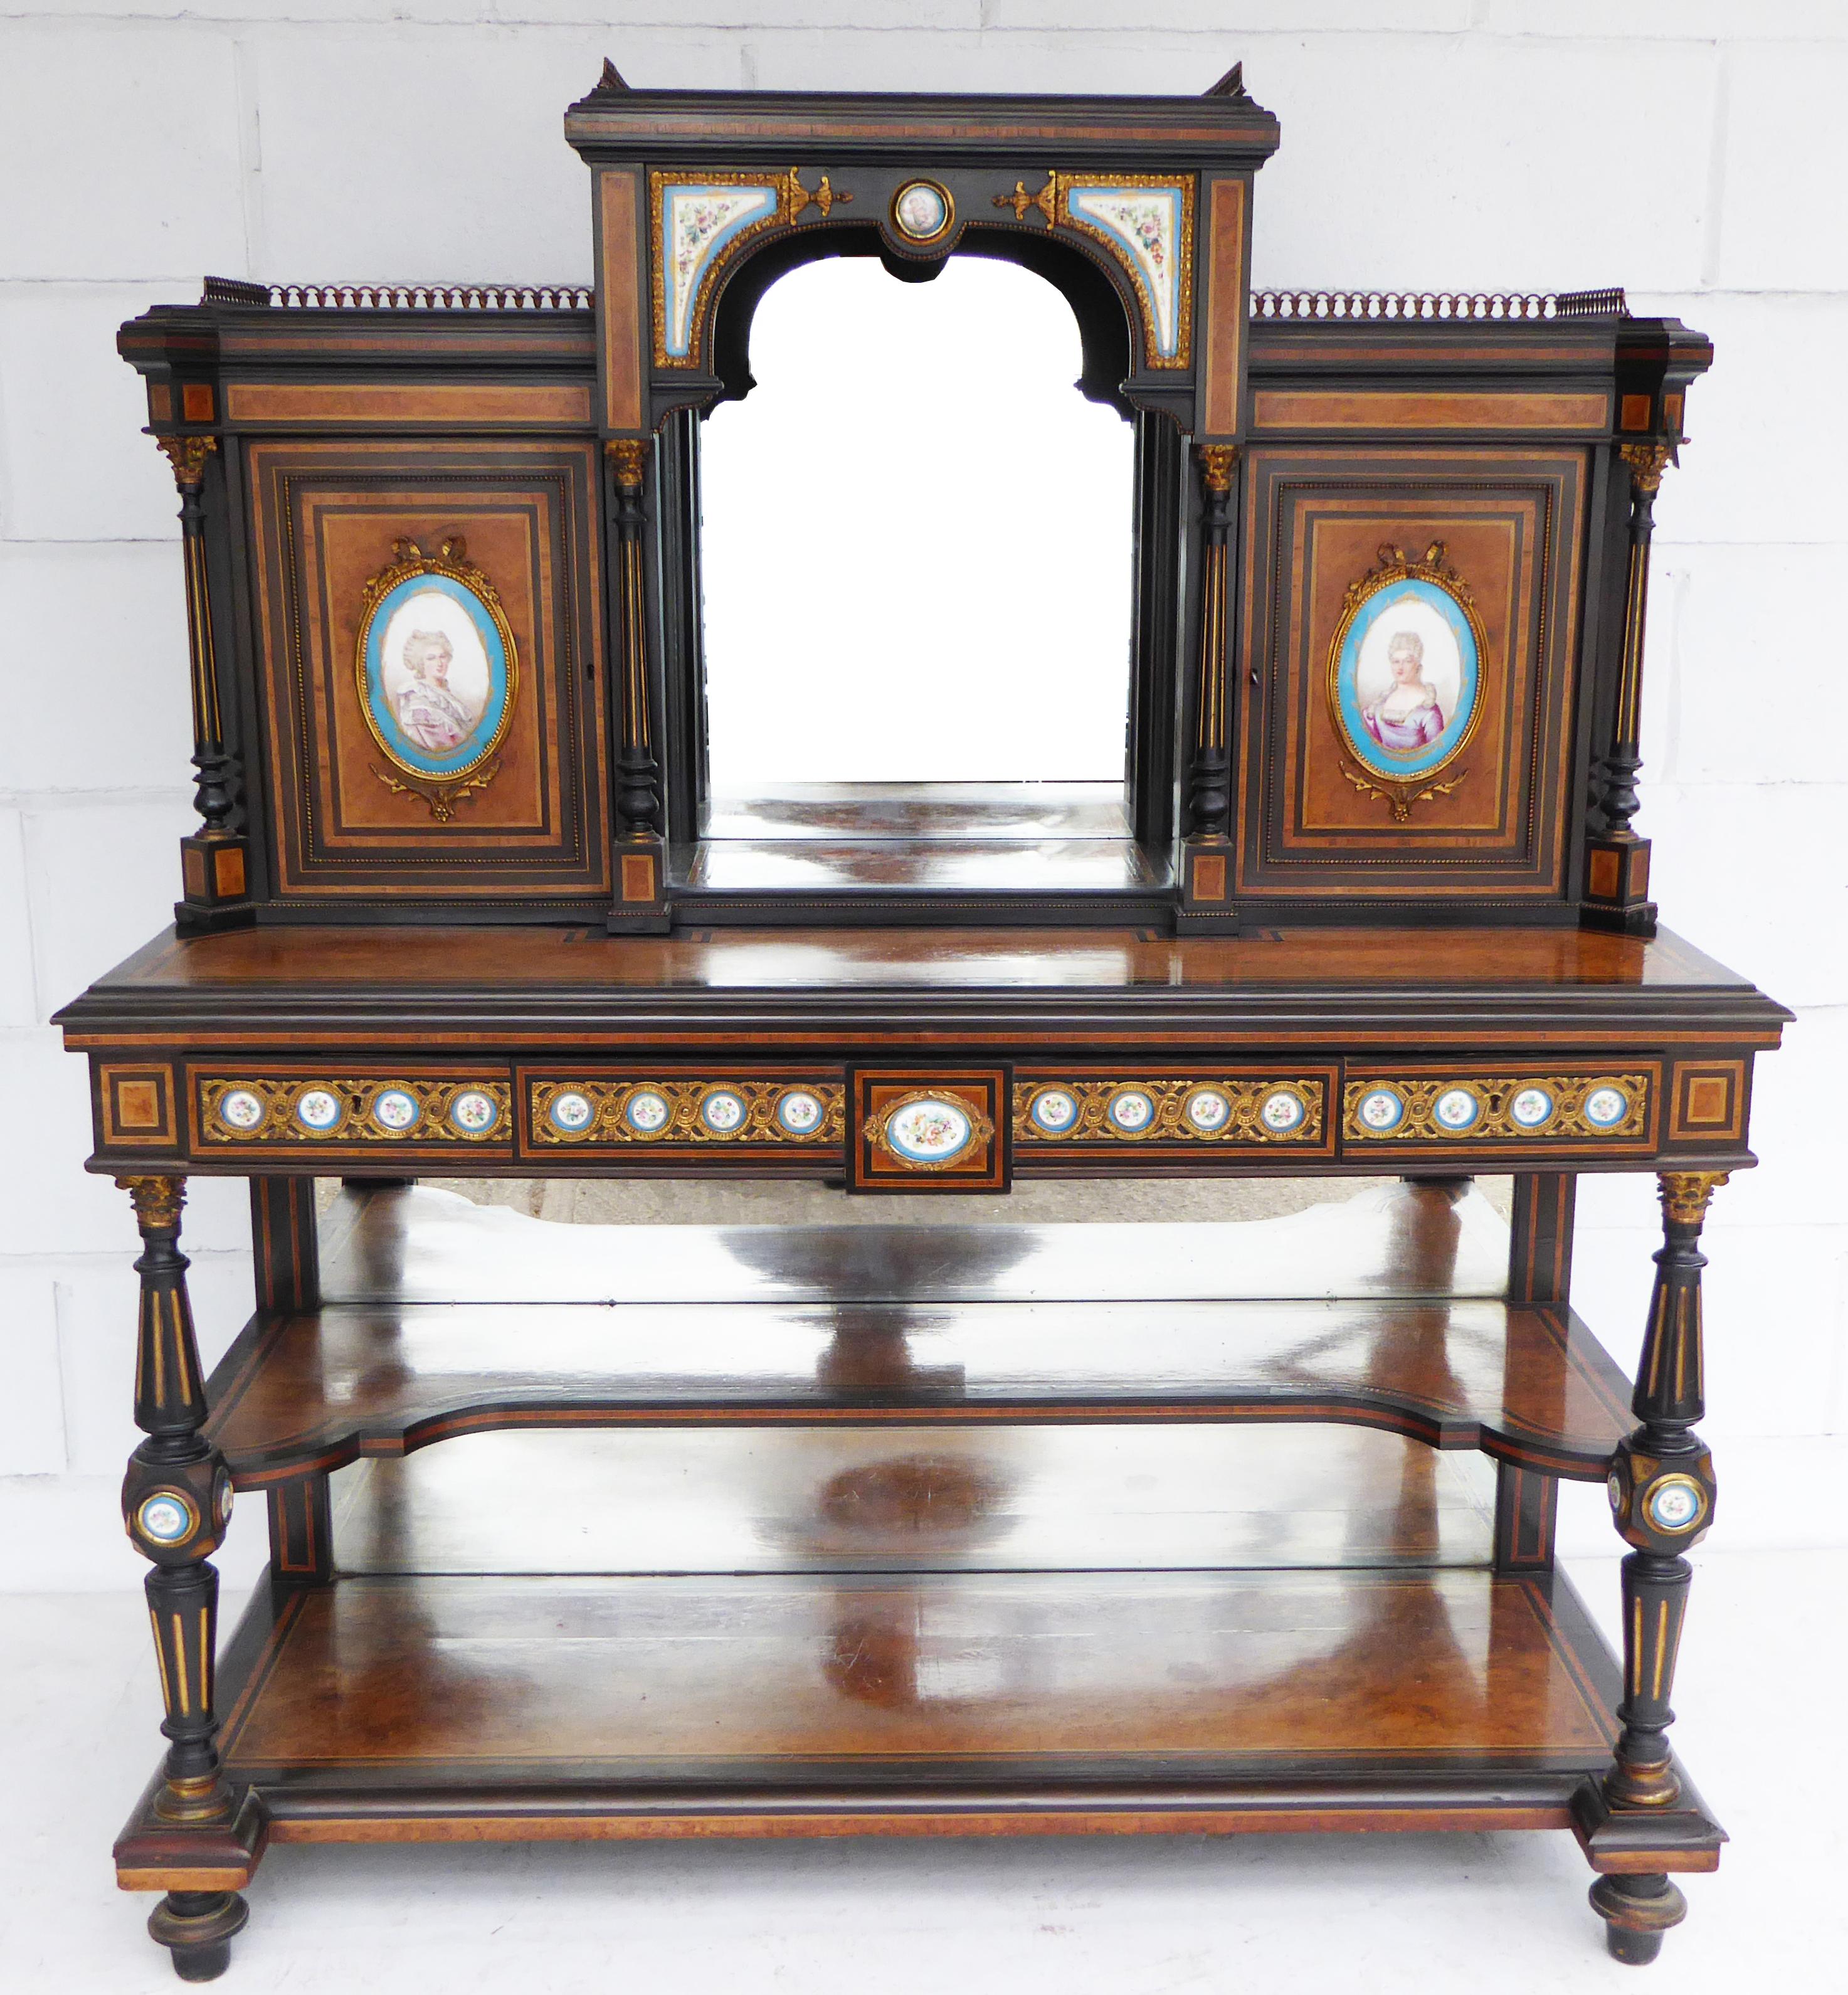 Zum Verkauf steht ein hochwertiges Bonheur Du Jour aus Ebenholz und Thuya-Holz aus dem 19. Jahrhundert. Das Bonheur du jour hat oben eine Messinggalerie über einem zentralen Spiegel, der von Sèvres-Plaketten flankiert wird. Dieses Stück besteht aus